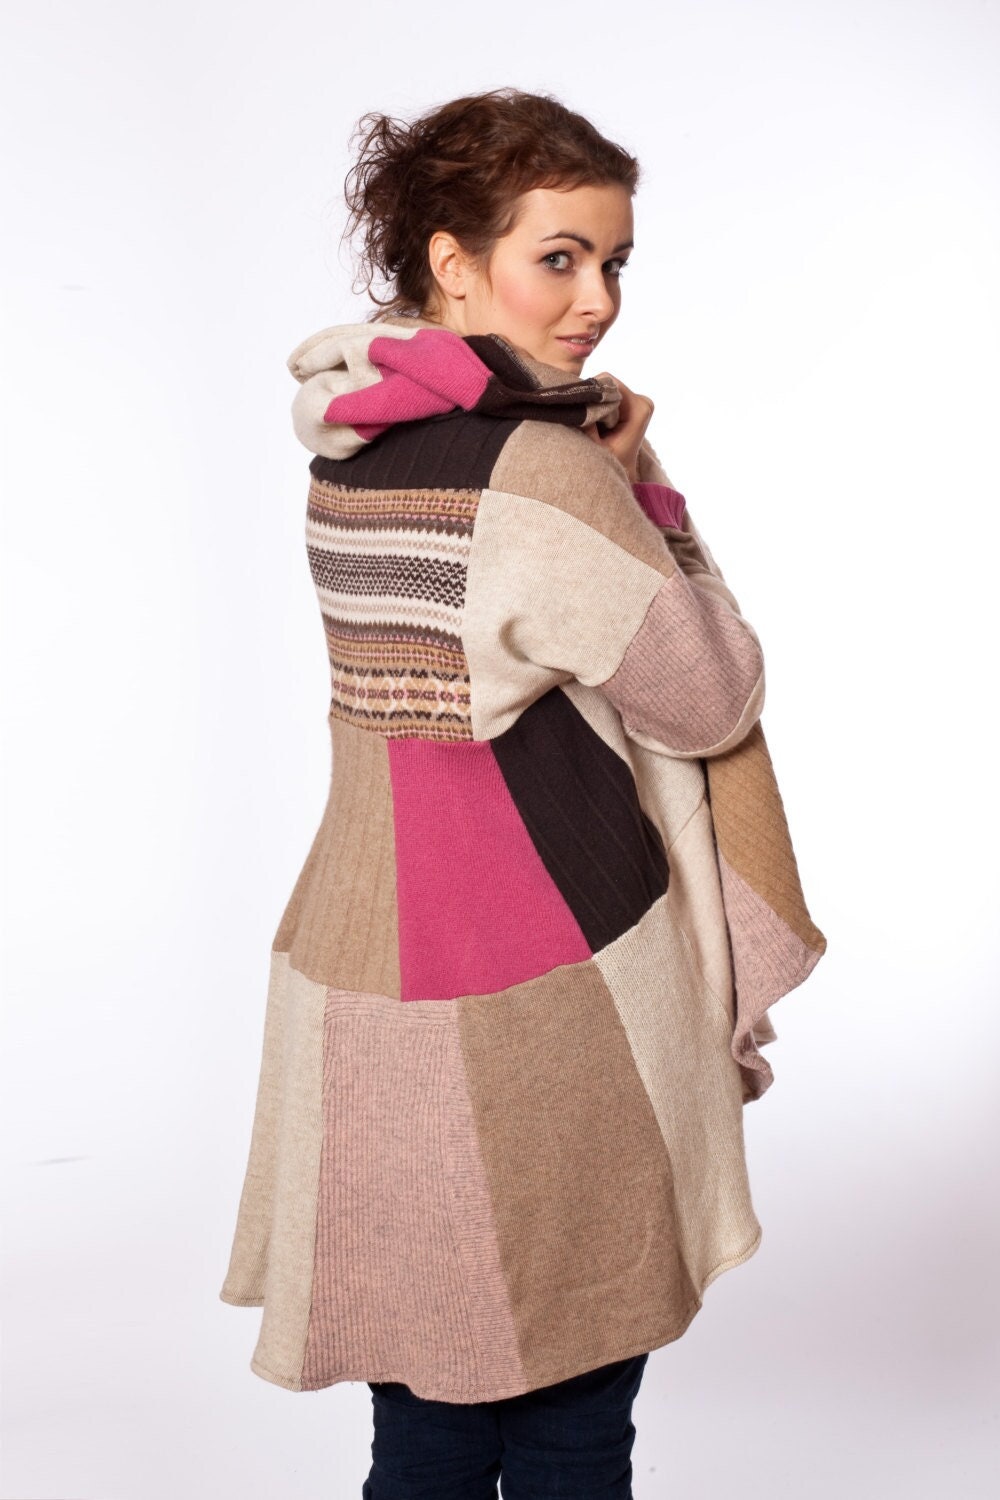 Damen Mantel Rosa Beige Wolle Für Frau Magnolia Pink Upcycled Kleidung Von Coolawoola Woolen Sewaters Cardigan Woman von coolawoola